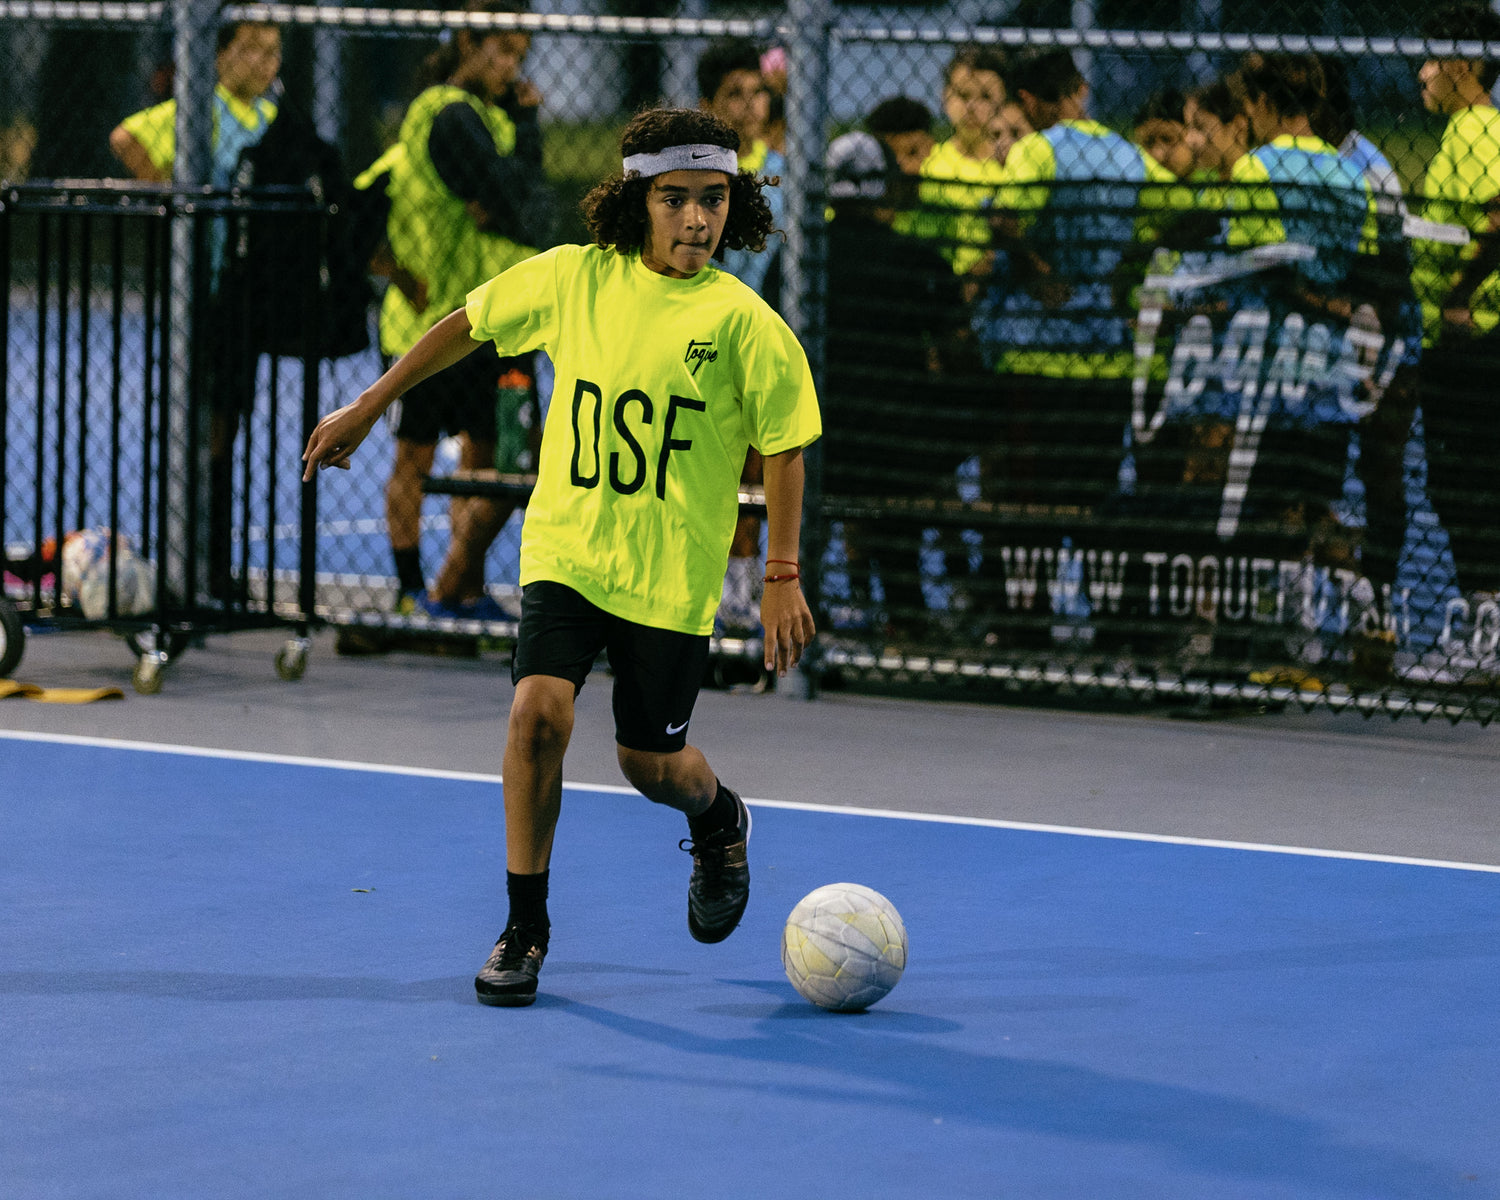 Development School of Futsal Program Gear (DSF)